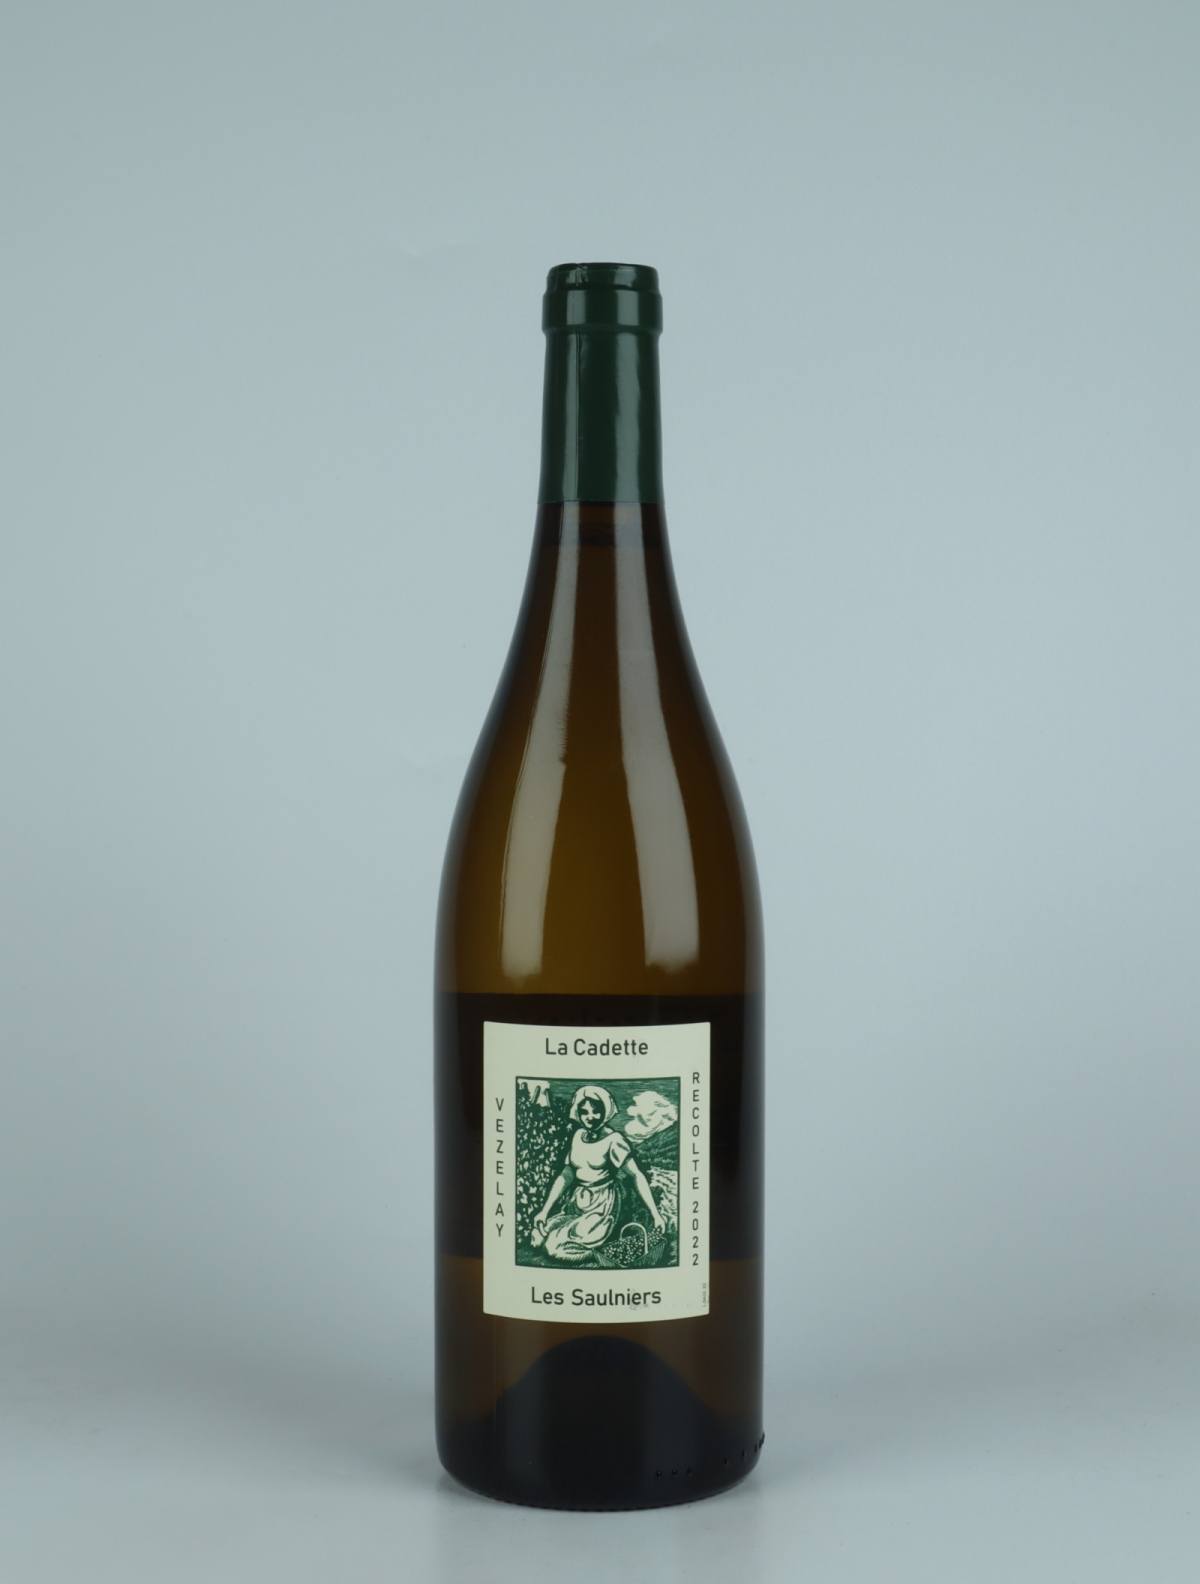 En flaske 2022 Bourgogne Vézelay - Les Saulniers Hvidvin fra Domaine de la Cadette, Bourgogne i Frankrig